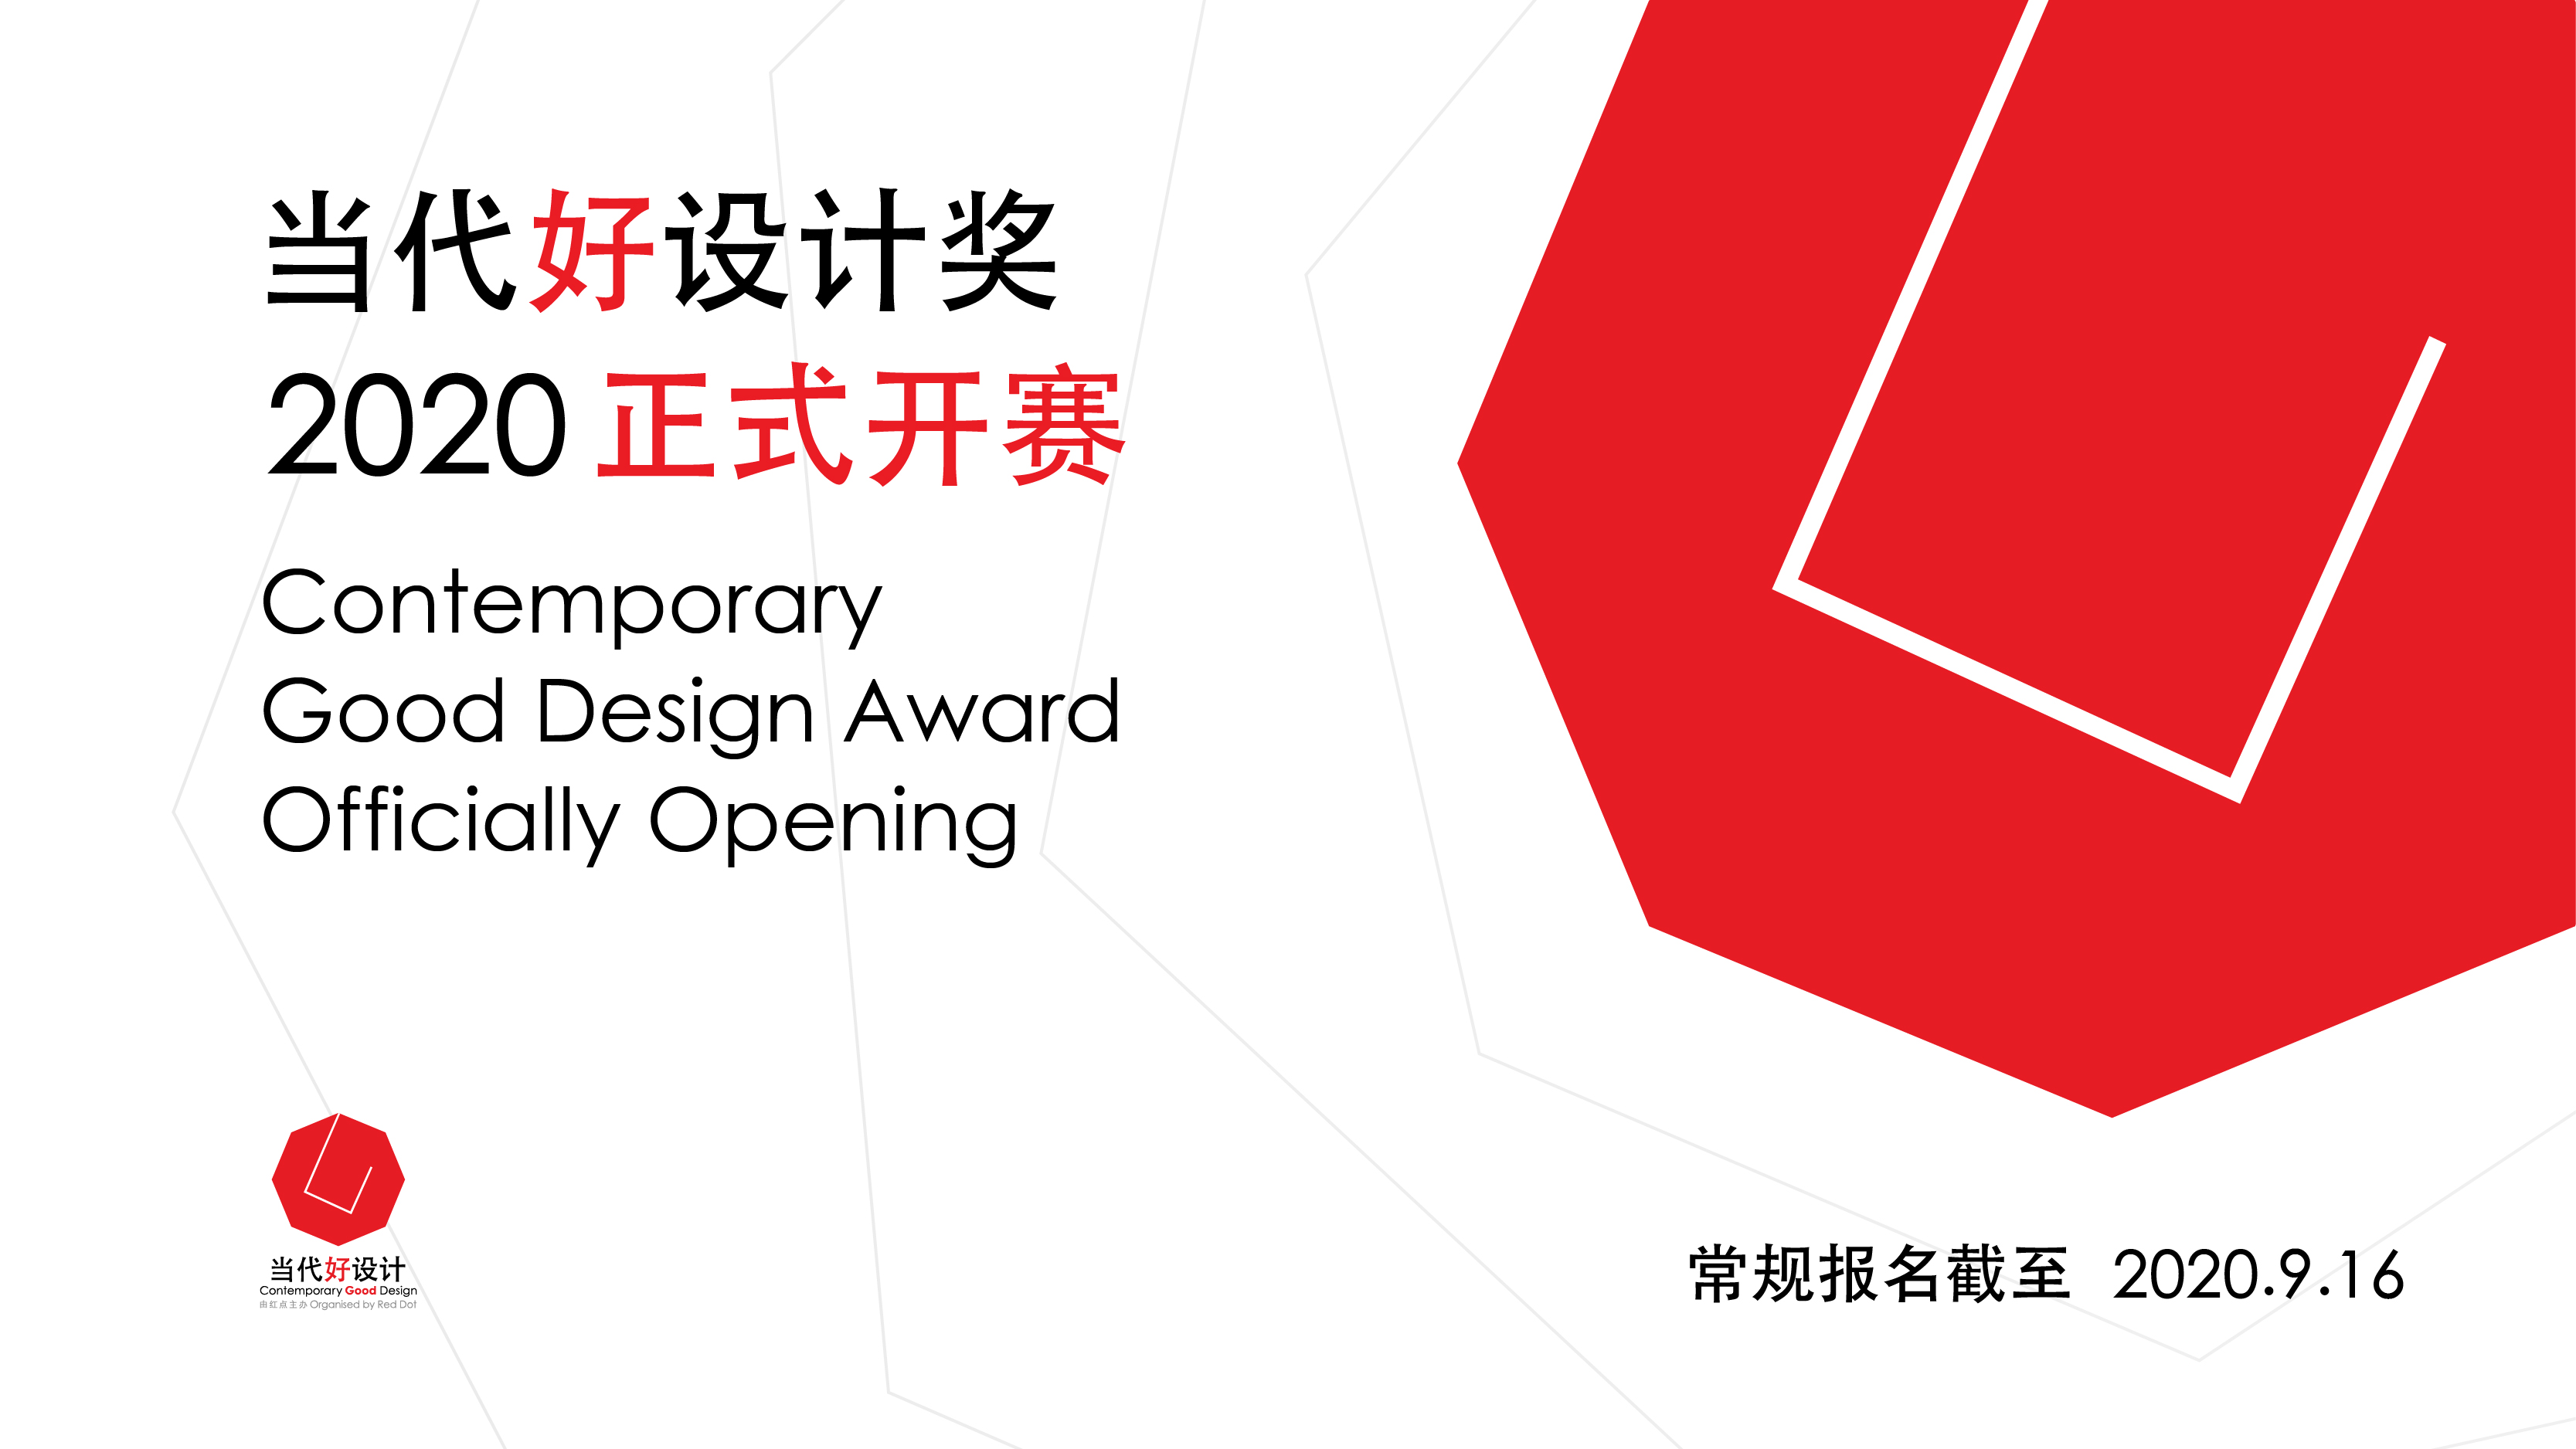 Contemporary Good Design Award 2020 officially calls for entries